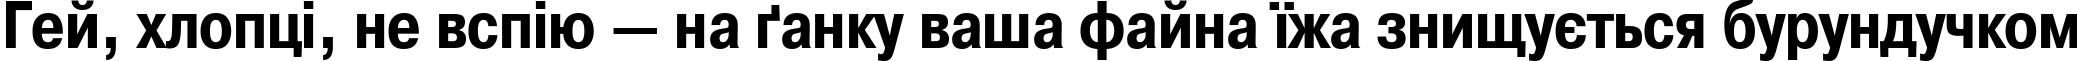 Пример написания шрифтом PragmaticaCondCTT Bold текста на украинском